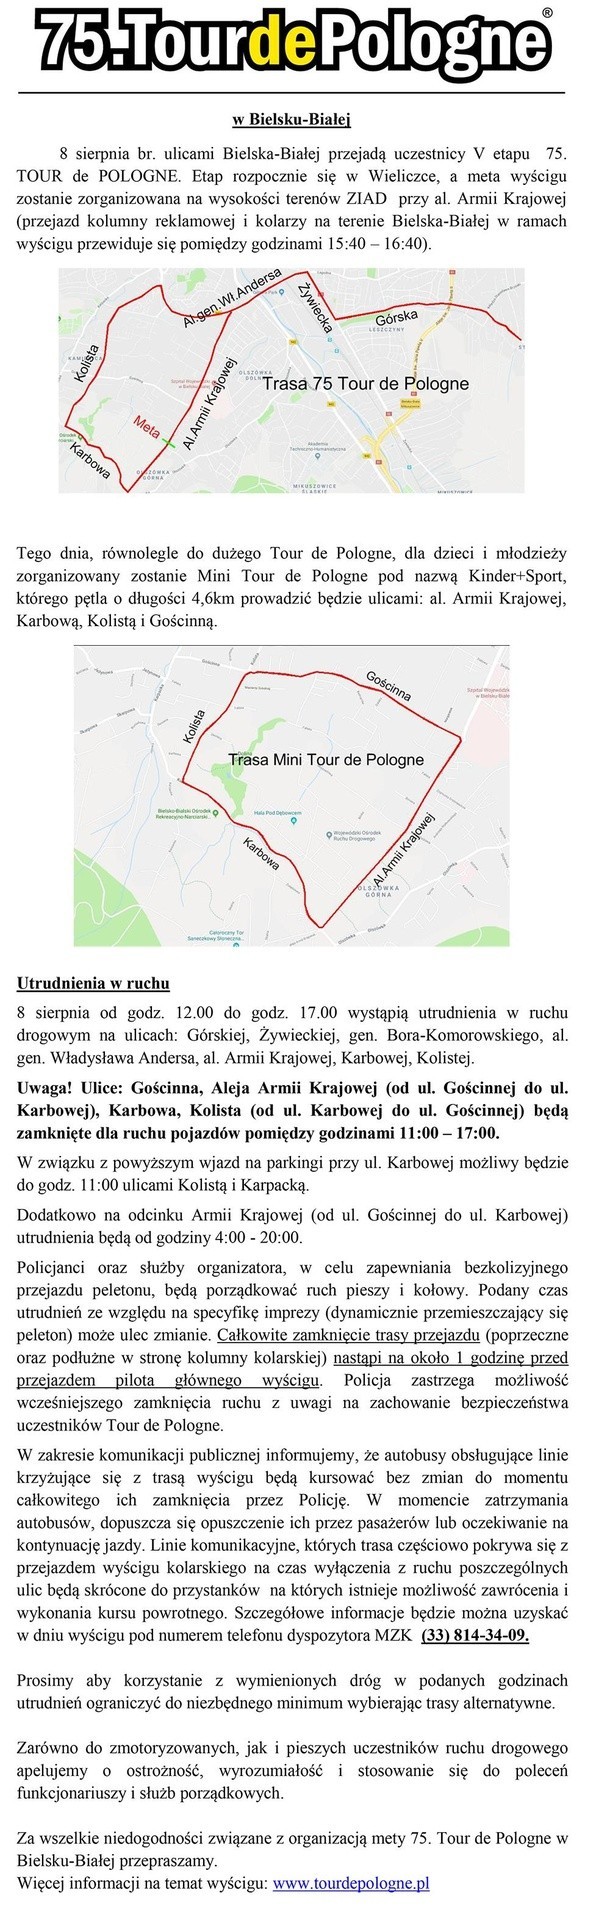 Tour de Pologne 2018: Wieliczka - Bielsko-Biała UTRUDNIENIA NA DROGACH. Tdp 2019: Etap 5,6,7 [MAPKA, TRASA WYŚCIGU, TRANSMISJA]